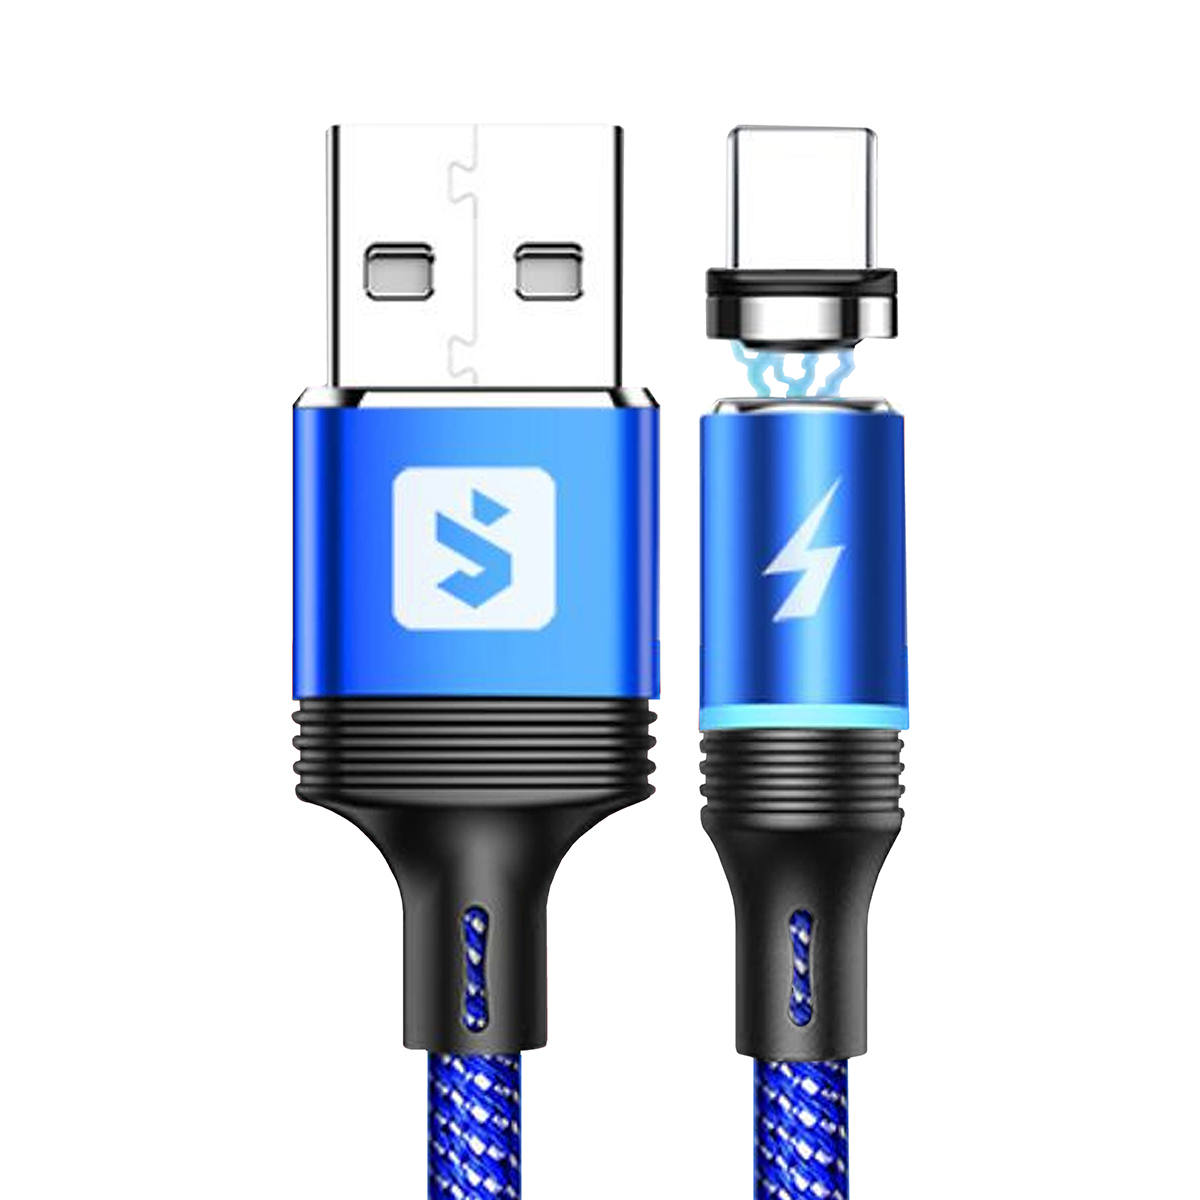 Cabo Magnético 3 em 1 para Celular Micro USB V8 + USB Tipo C + Lightning 2.4A 1 metro SX-B16-3 Azul